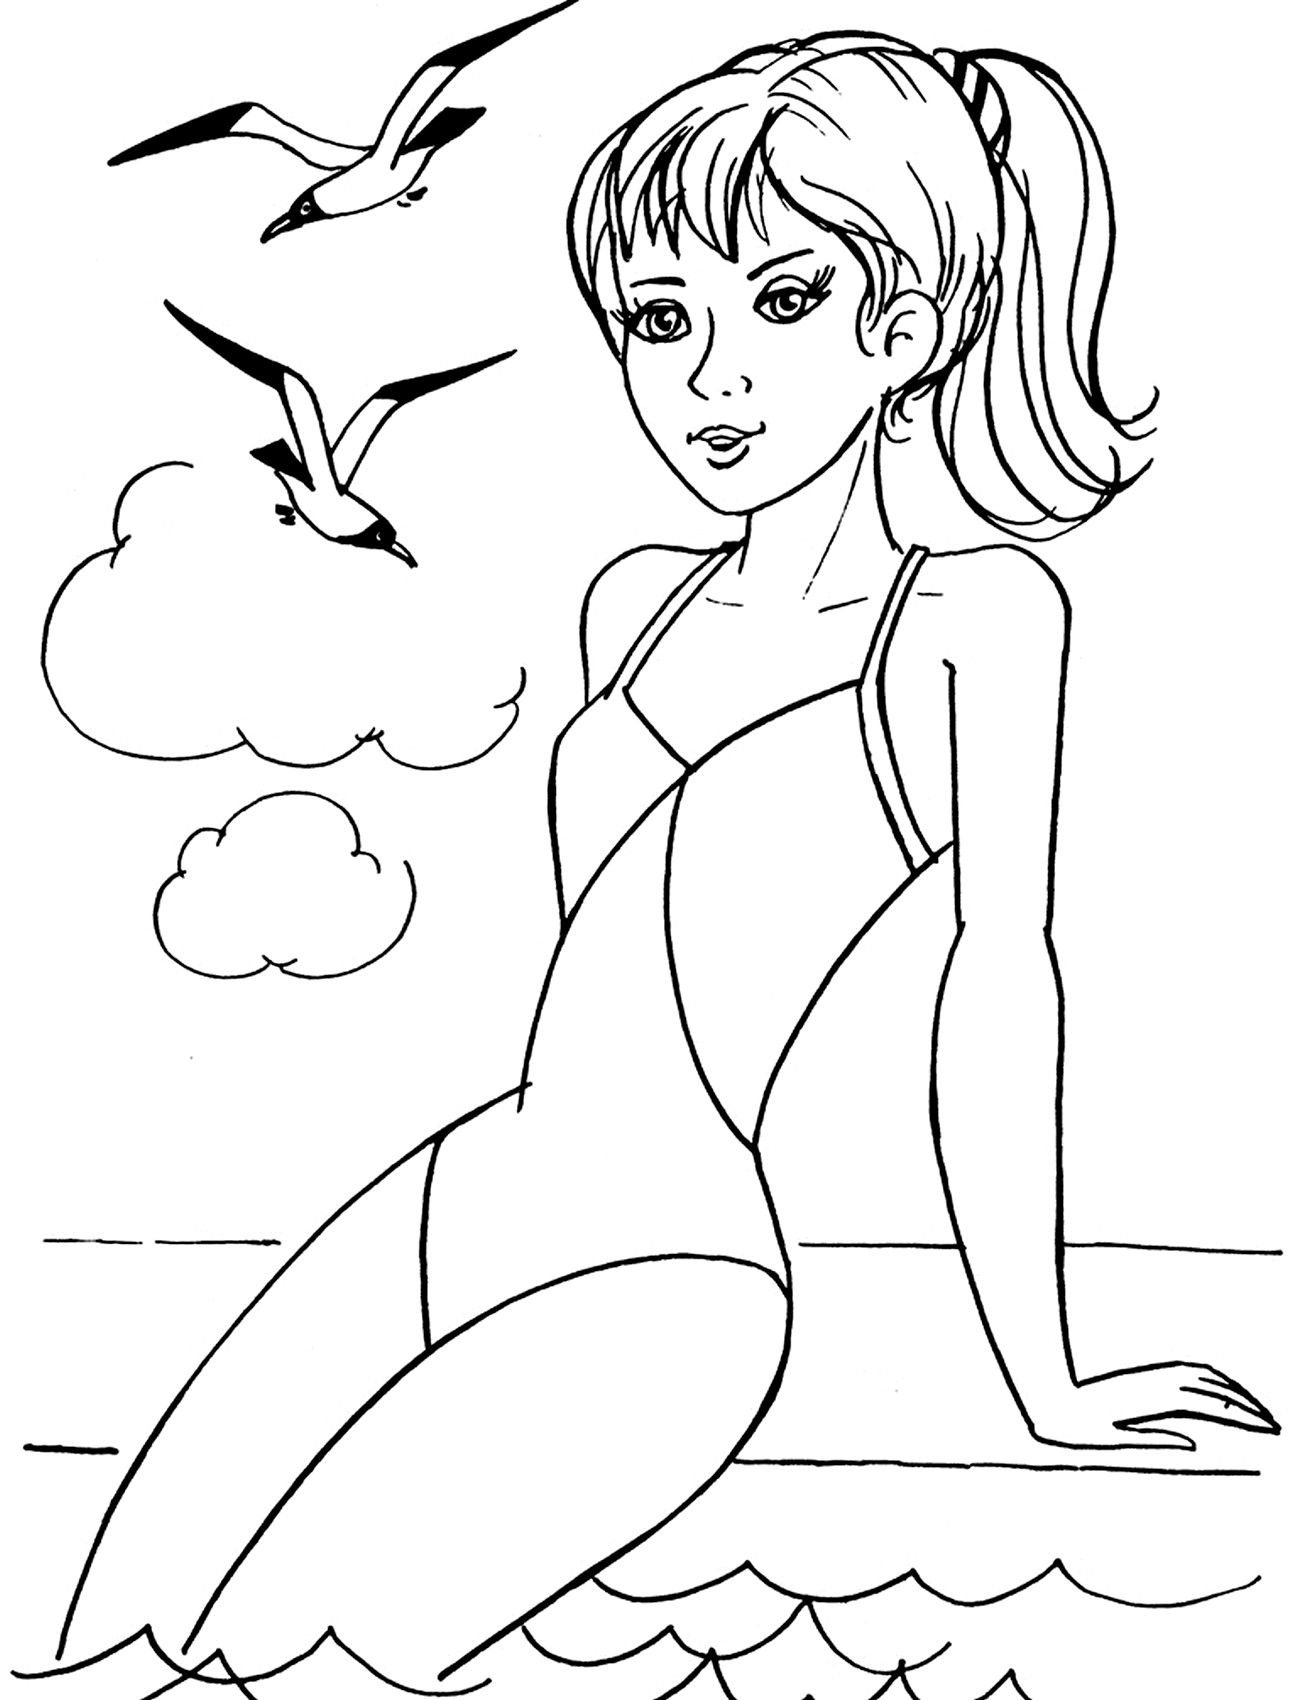 Рисунок Для Девочки 9 Лет